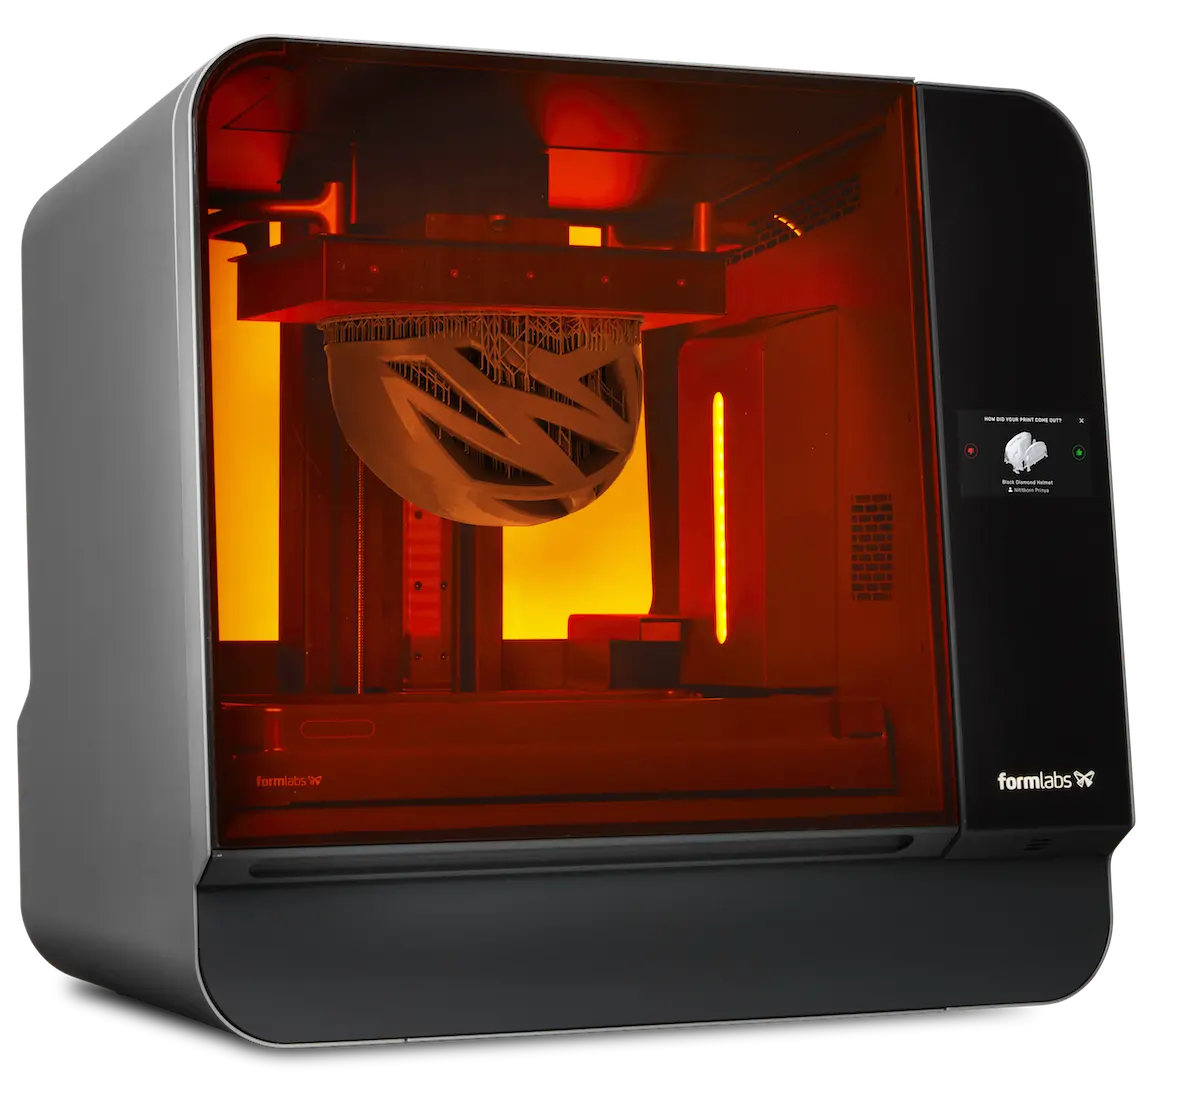 Mistillid jeg lytter til musik lærer Form 3L: The First Affordable Large SLA 3D Printer | Formlabs